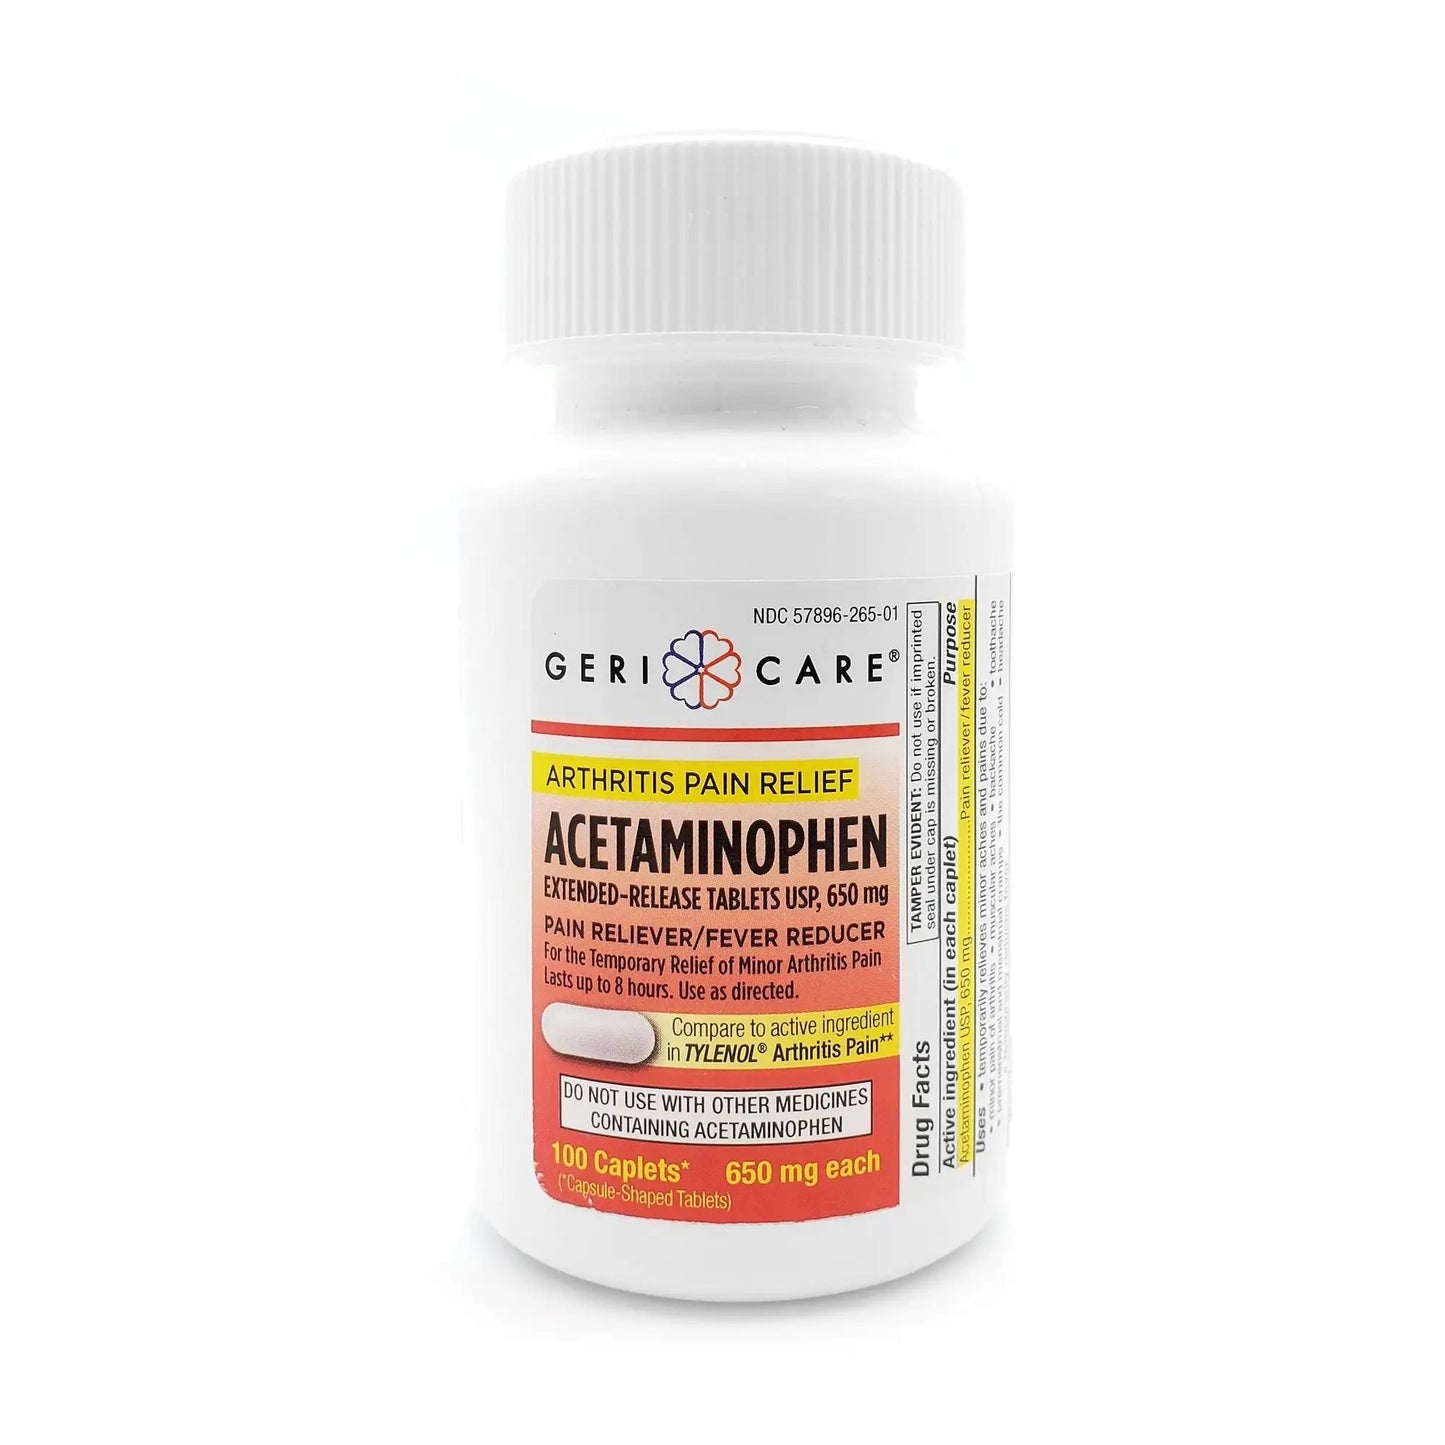 Geri-Care Acetaminophen Pain Relief, 100 Tablets per Bottle